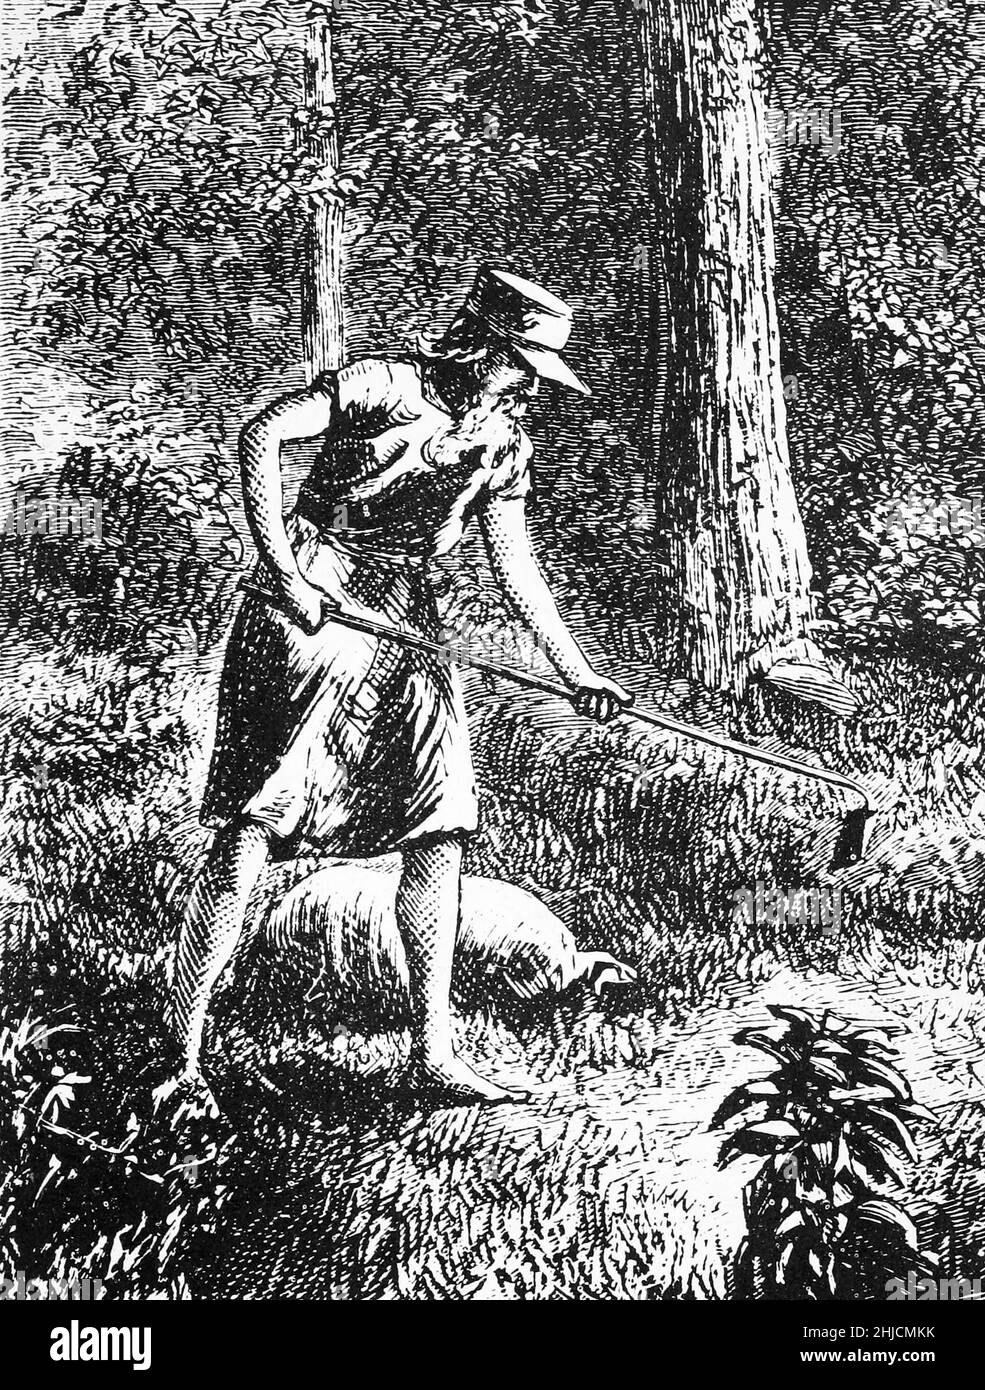 Un'incisione di Johnny Appleseed, dal New Monthly Magazine di Harper, 1871. John Chapman (1774-1845), meglio conosciuto come Johnny Appleseed, era un nurseryman dei pionieri americani che introdusse gli alberi di mele in grandi parti della Pennsylvania, dell'Ohio, dell'Indiana, dell'Illinois e dell'Ontario, così come nelle contee settentrionali dell'attuale West Virginia. Divenne una leggenda americana con le sue attività di piantagione di alberi. Foto Stock